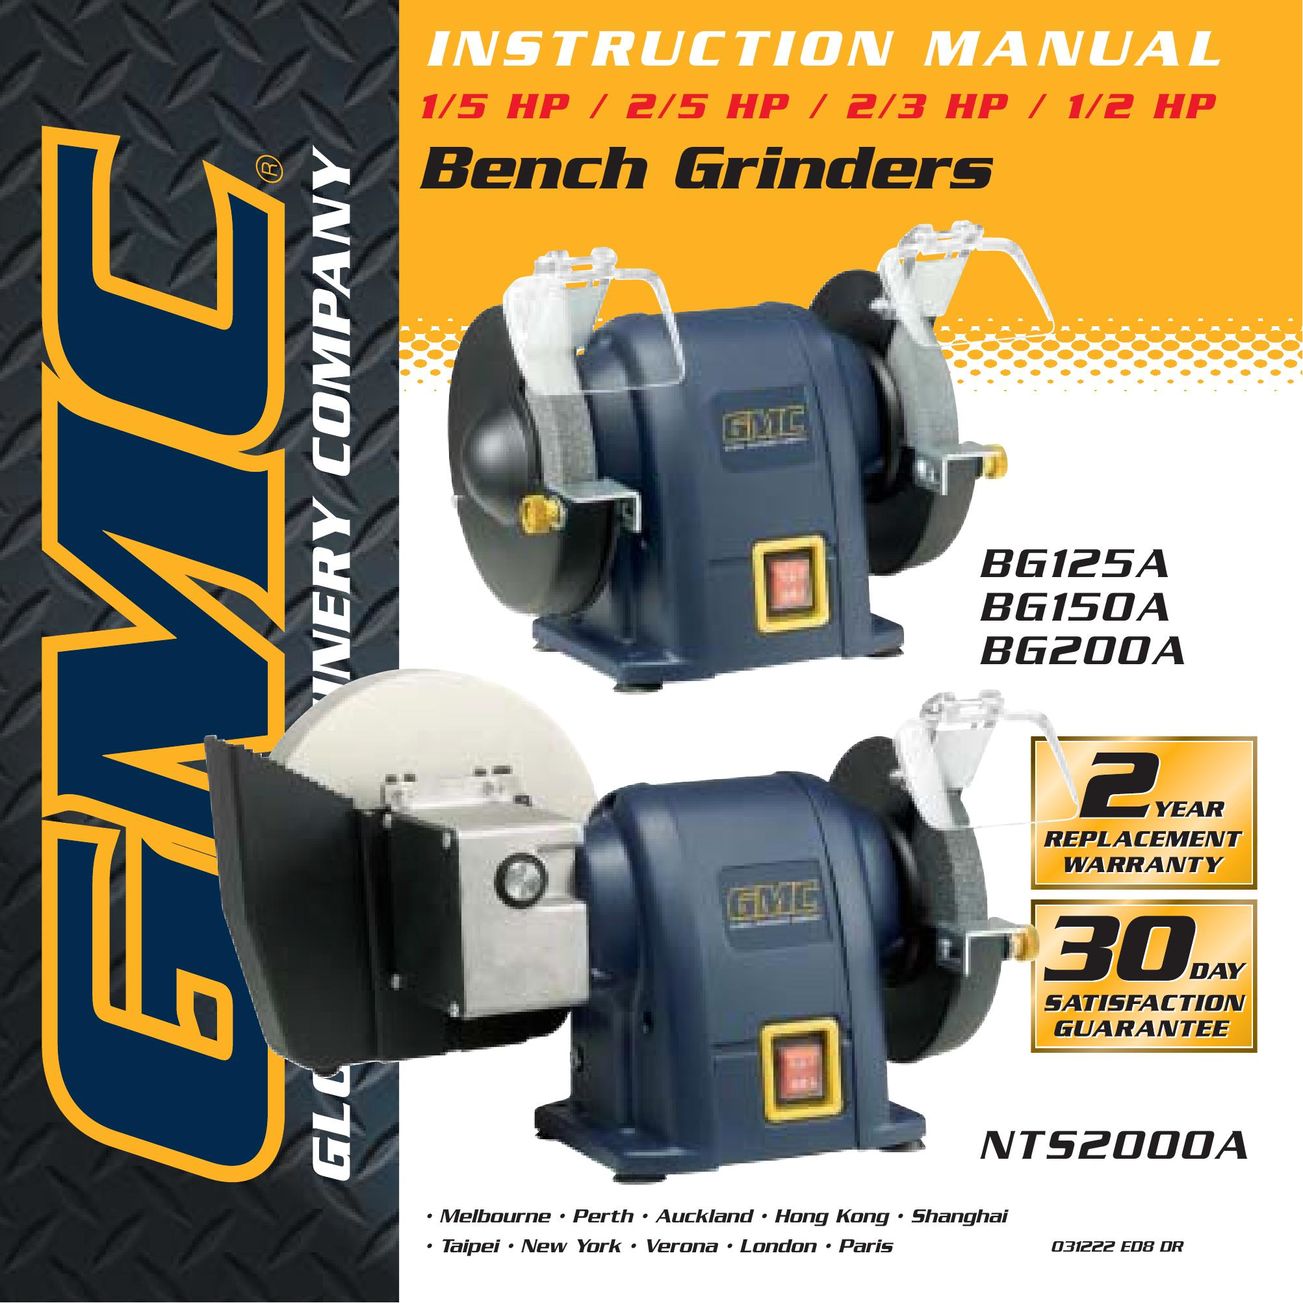 Global Machinery Company BG200A Grinder User Manual